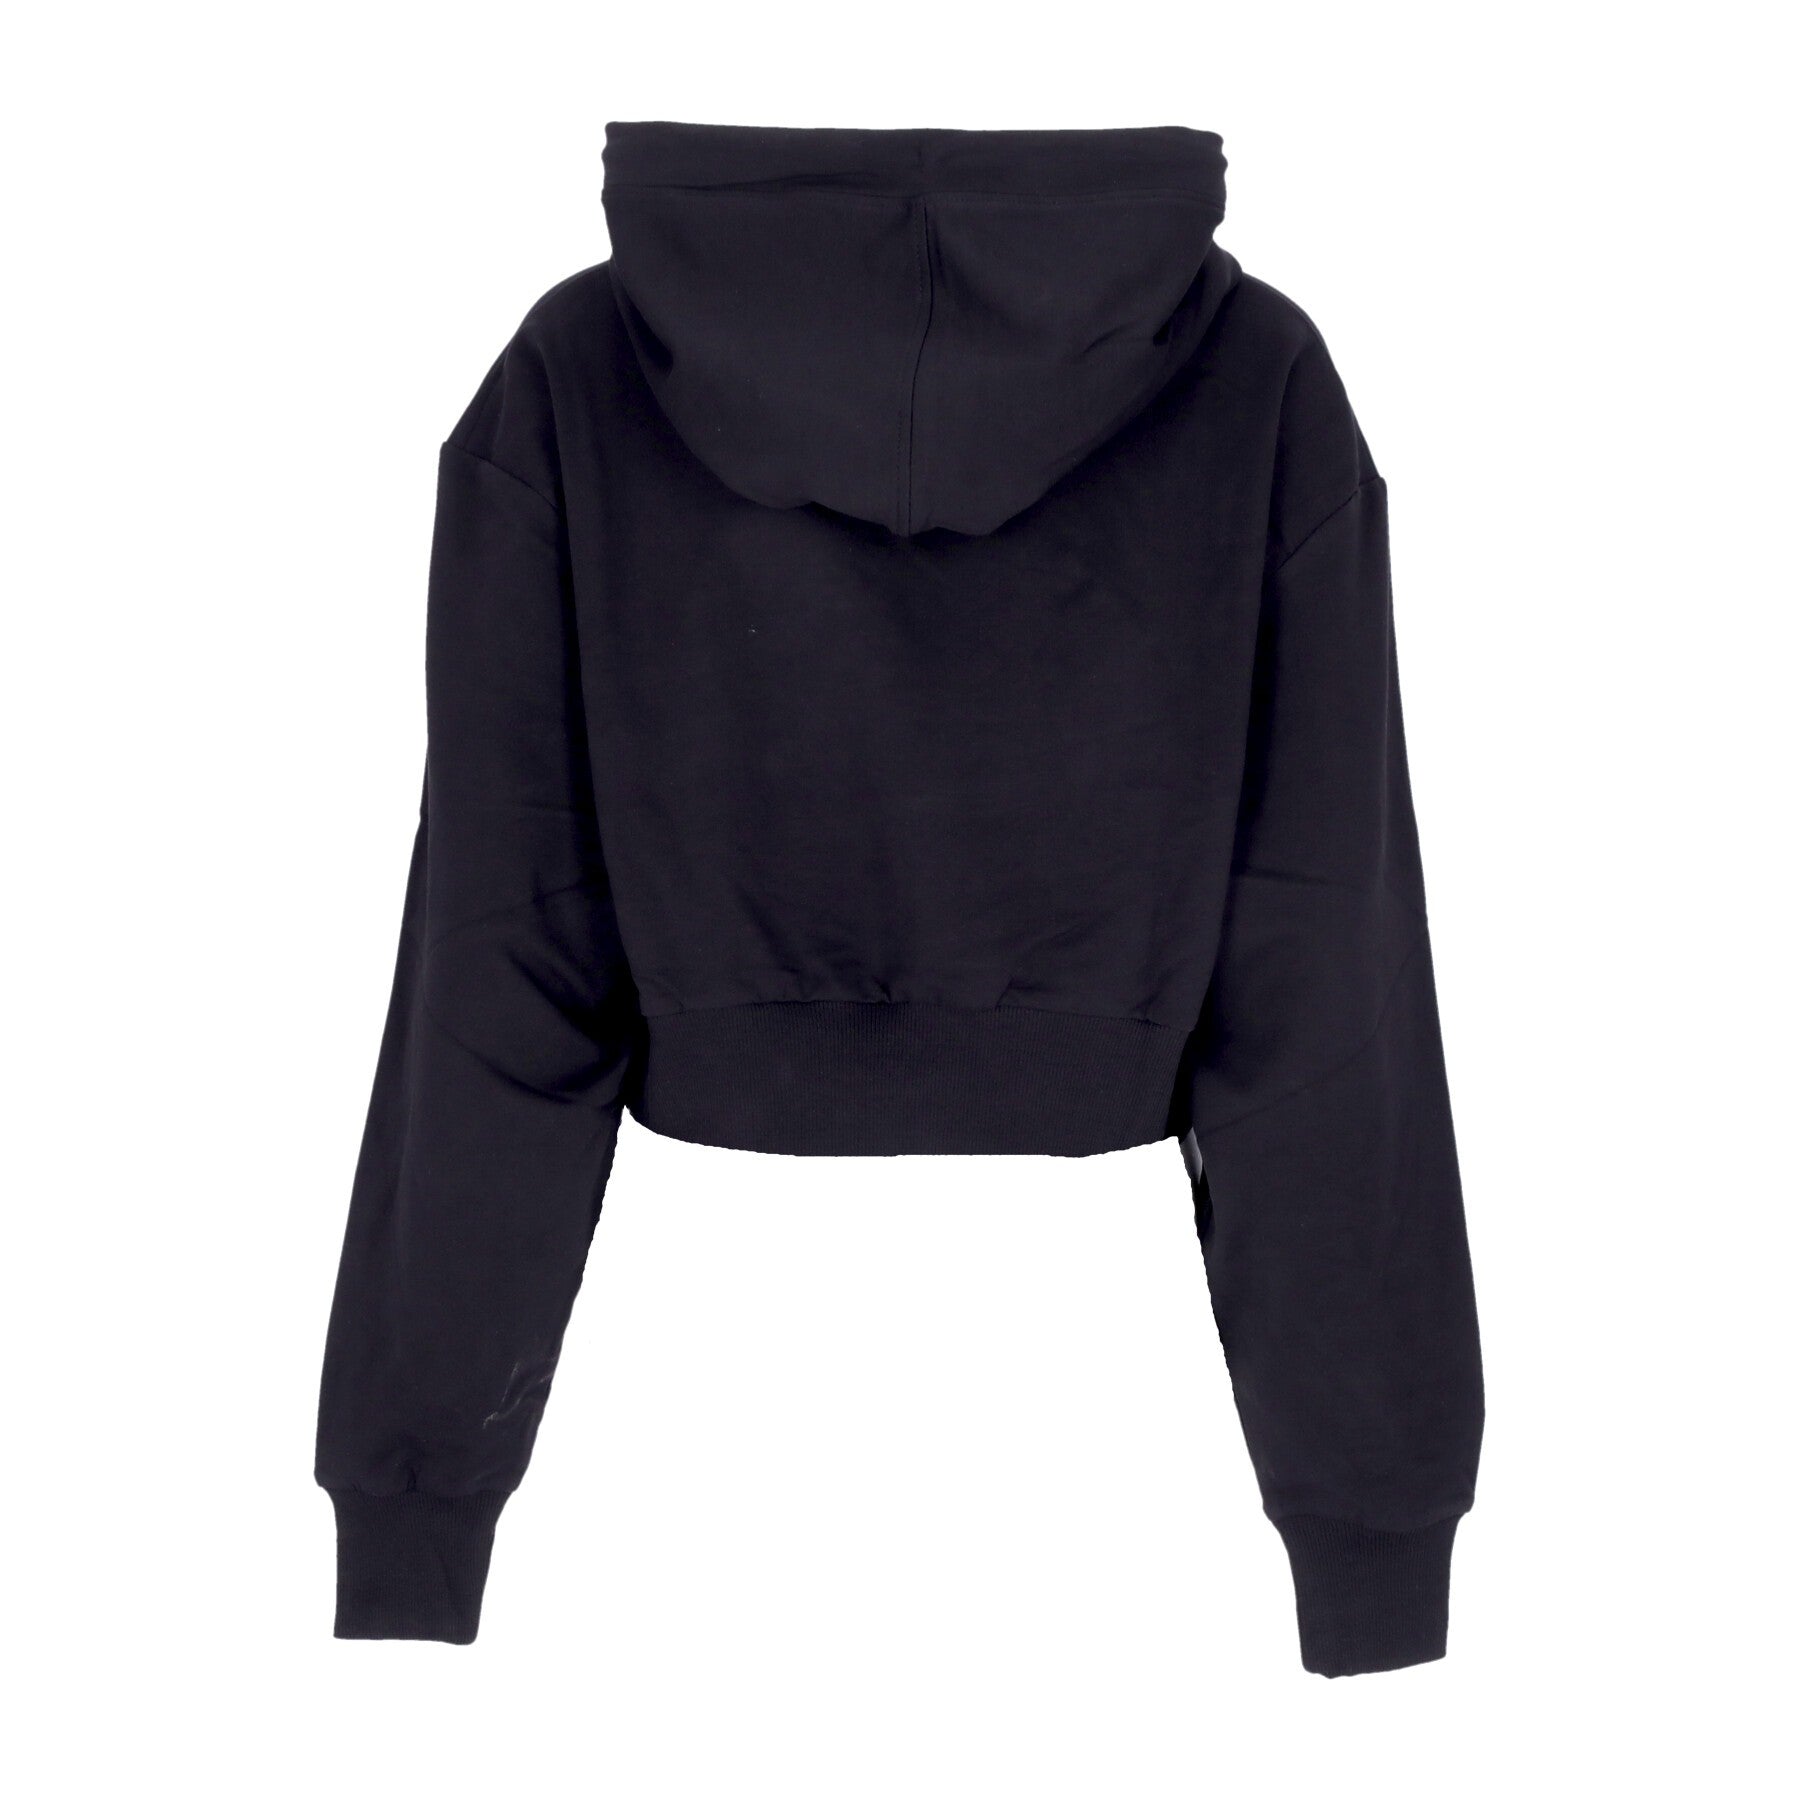 Women's Cropped Lightweight Hooded Sweatshirt